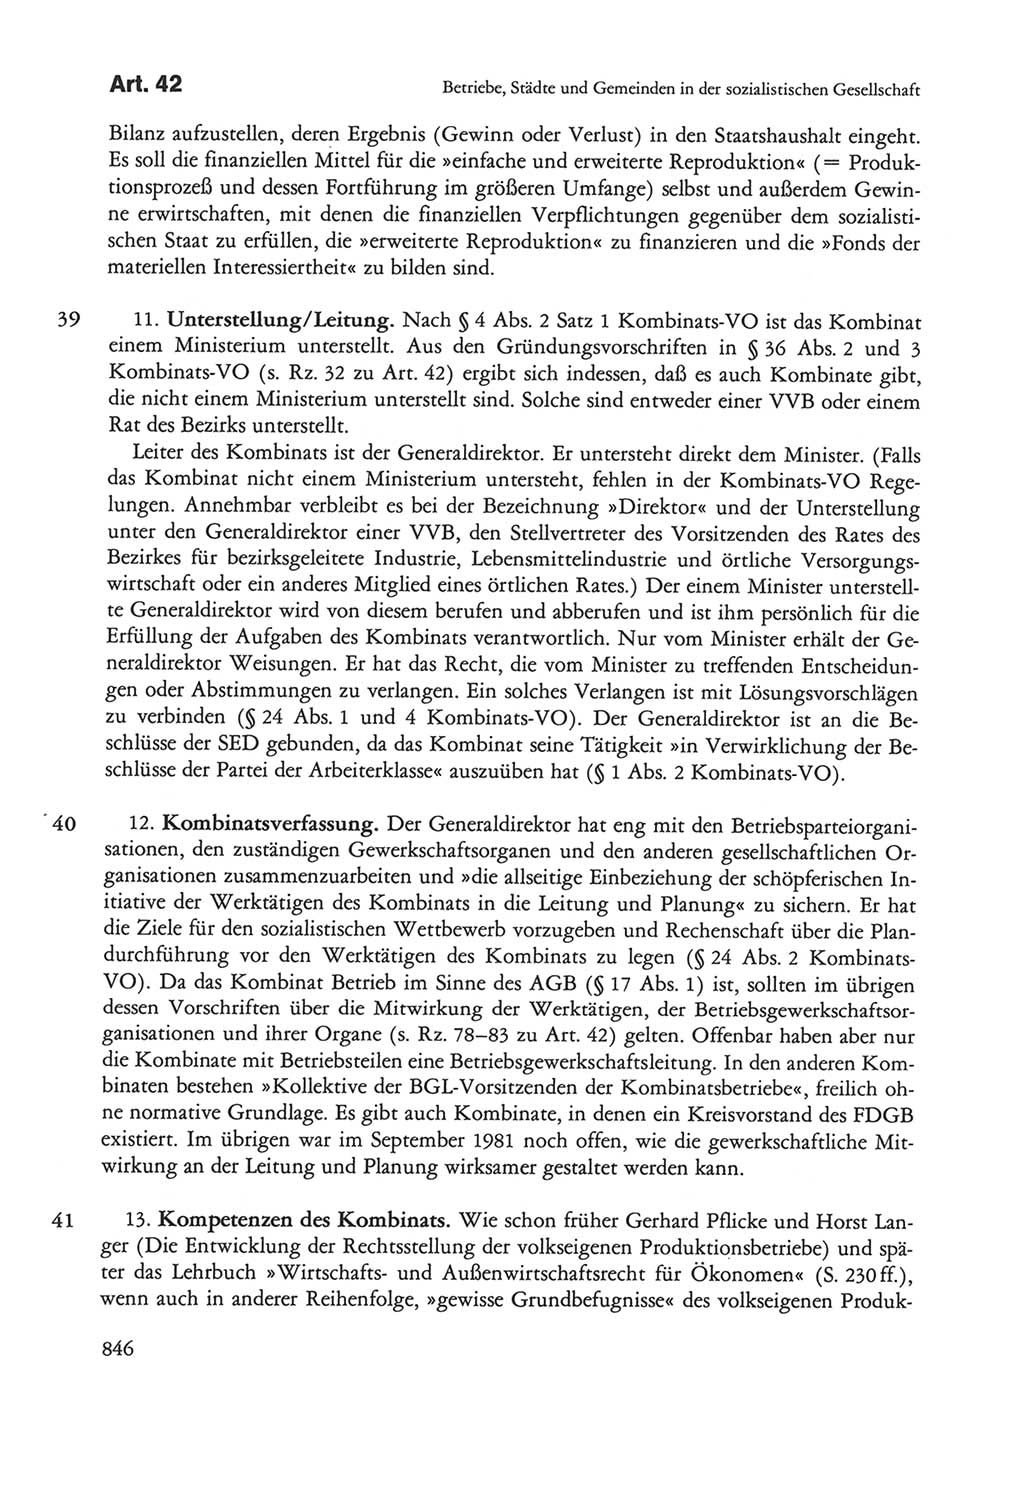 Die sozialistische Verfassung der Deutschen Demokratischen Republik (DDR), Kommentar mit einem Nachtrag 1997, Seite 846 (Soz. Verf. DDR Komm. Nachtr. 1997, S. 846)